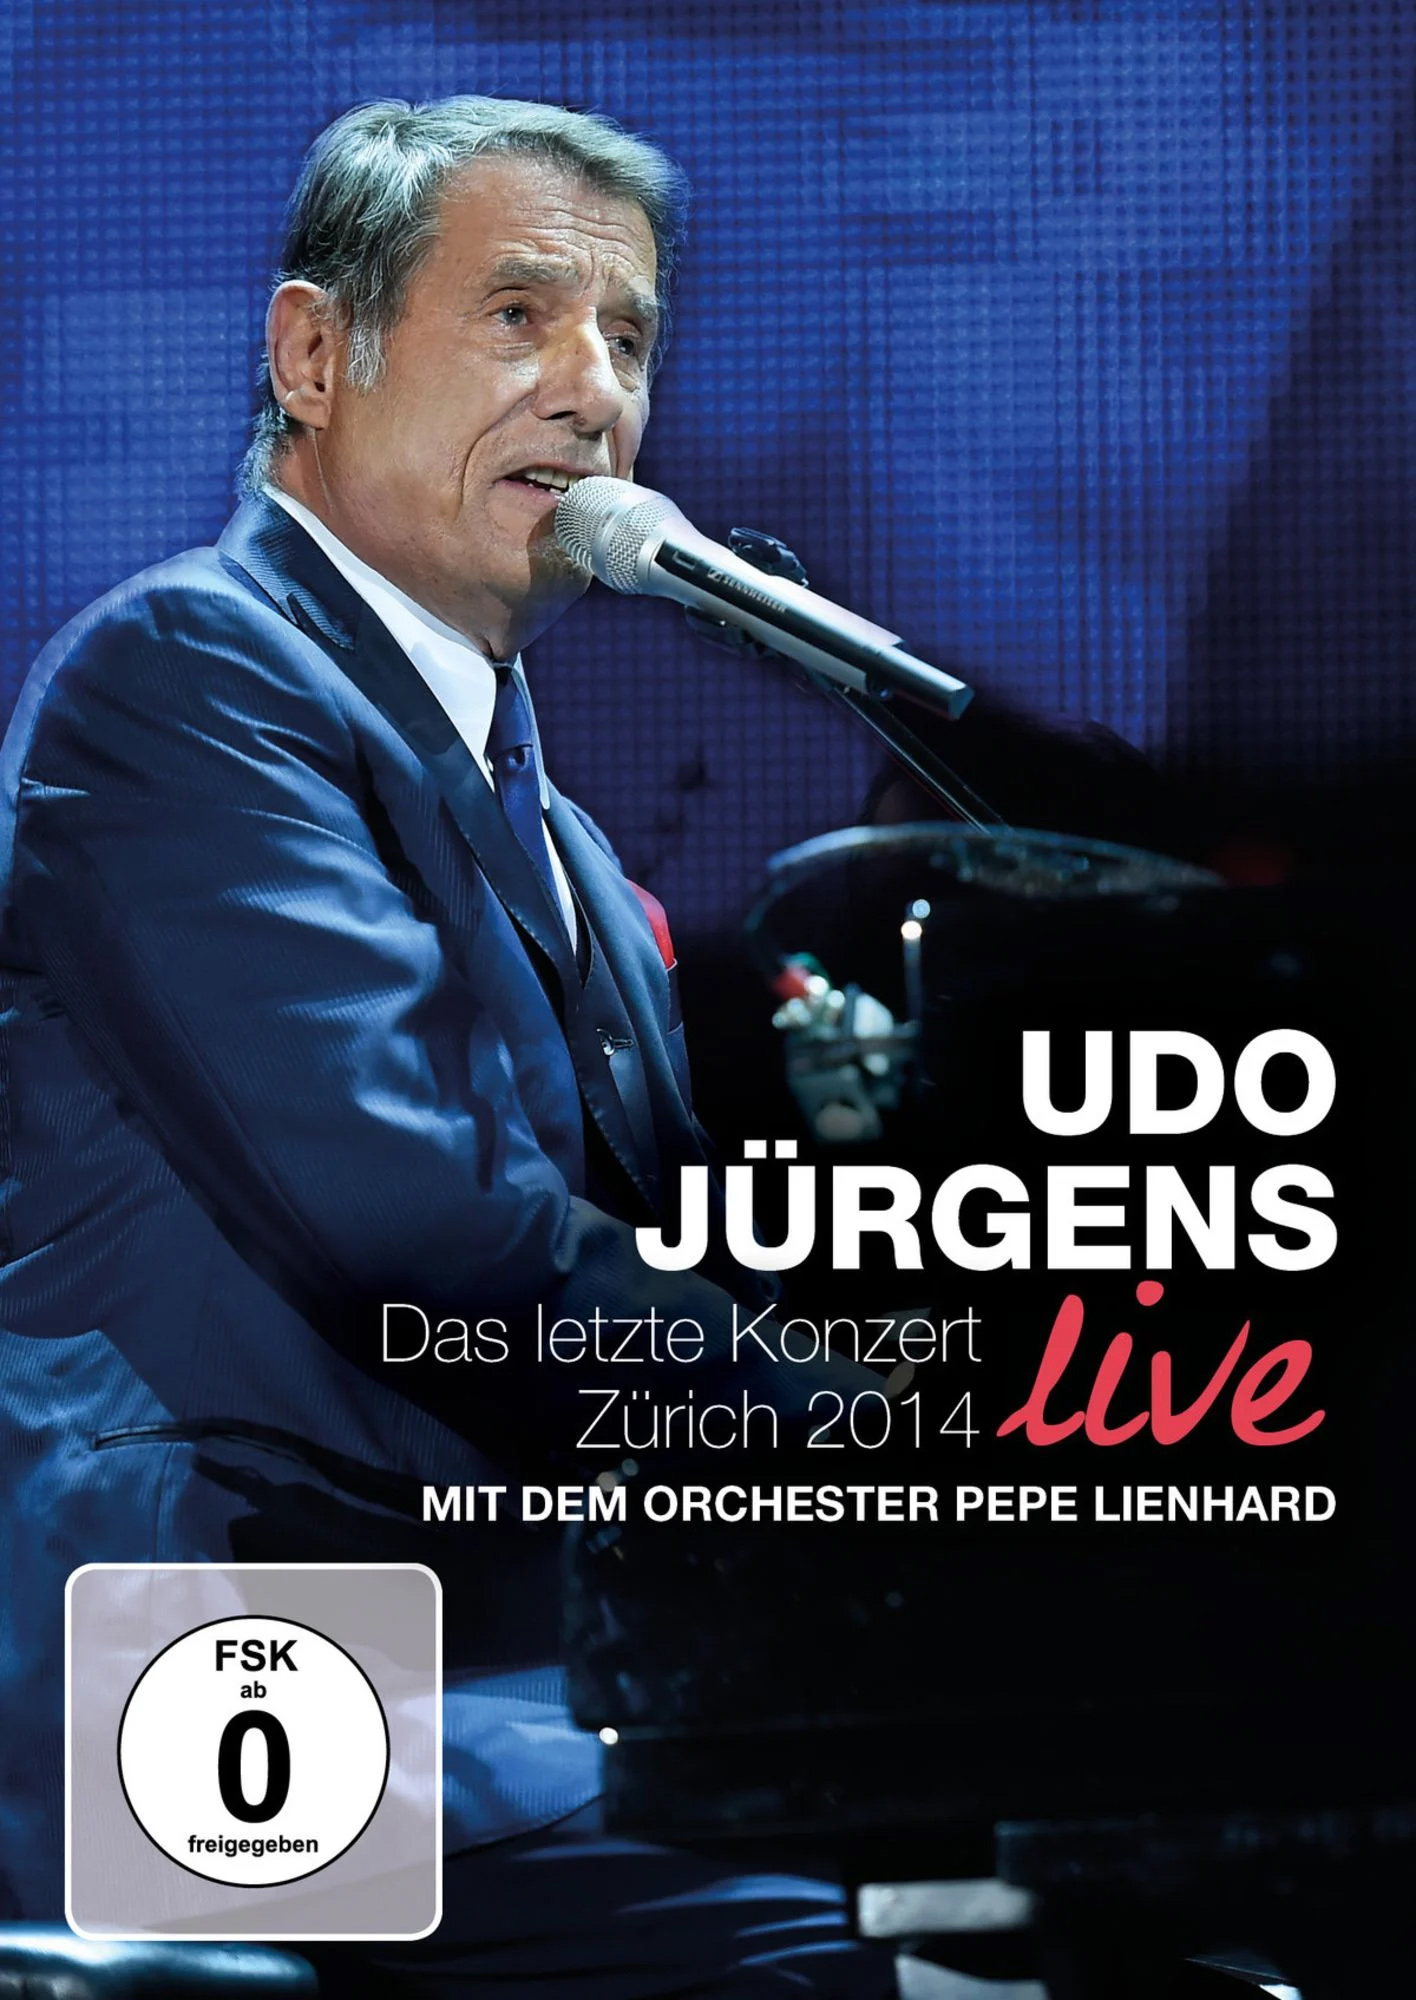 Das Letzte Konzert: Zurich 2014 Live (DVD) | Udo Jurgens